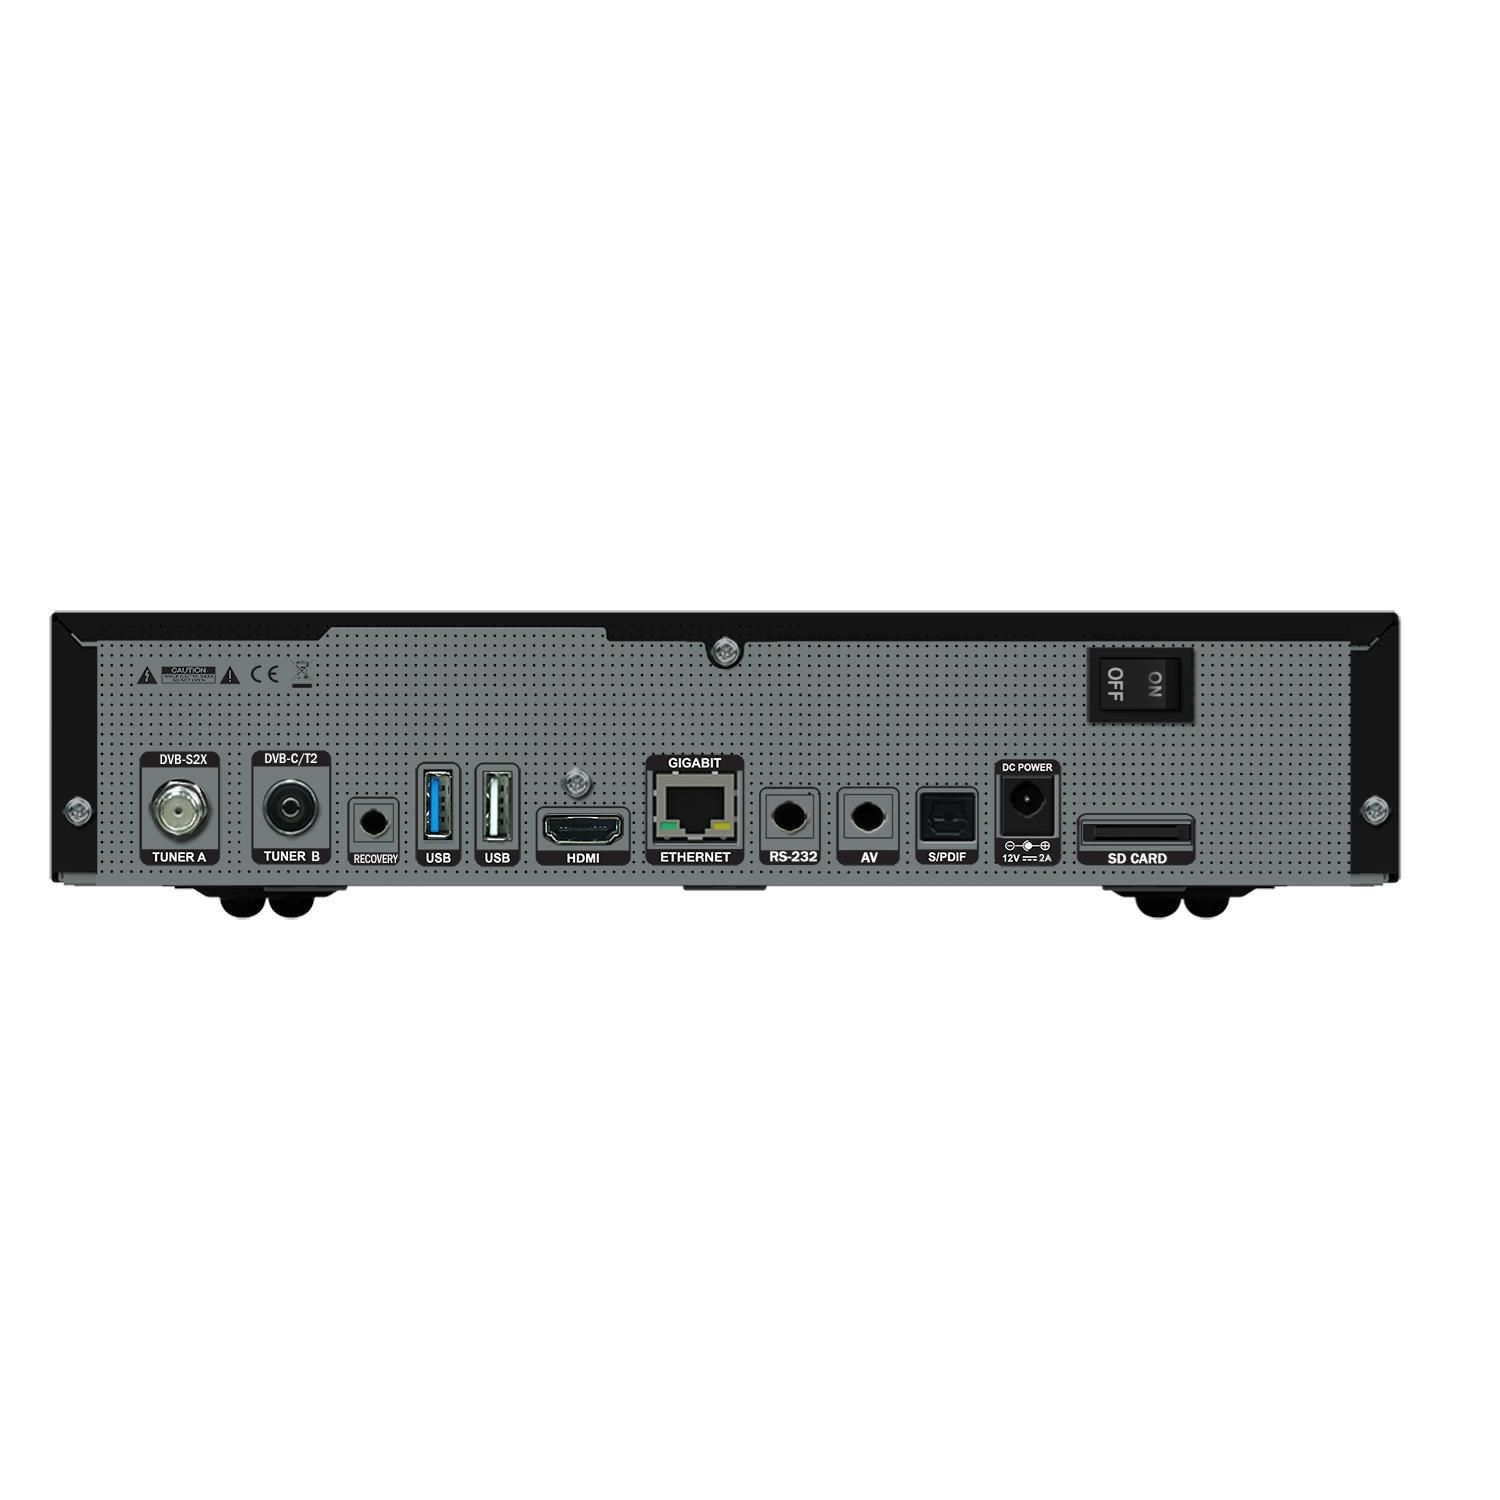 GIGABLUE UHD TRIO 4K SAT-Receiver schwarz) (HDTV, DVB-S2, PVR-Funktion=optional, DVB-S, DVB-T, Twin DVB-C2, DVB-C, Tuner